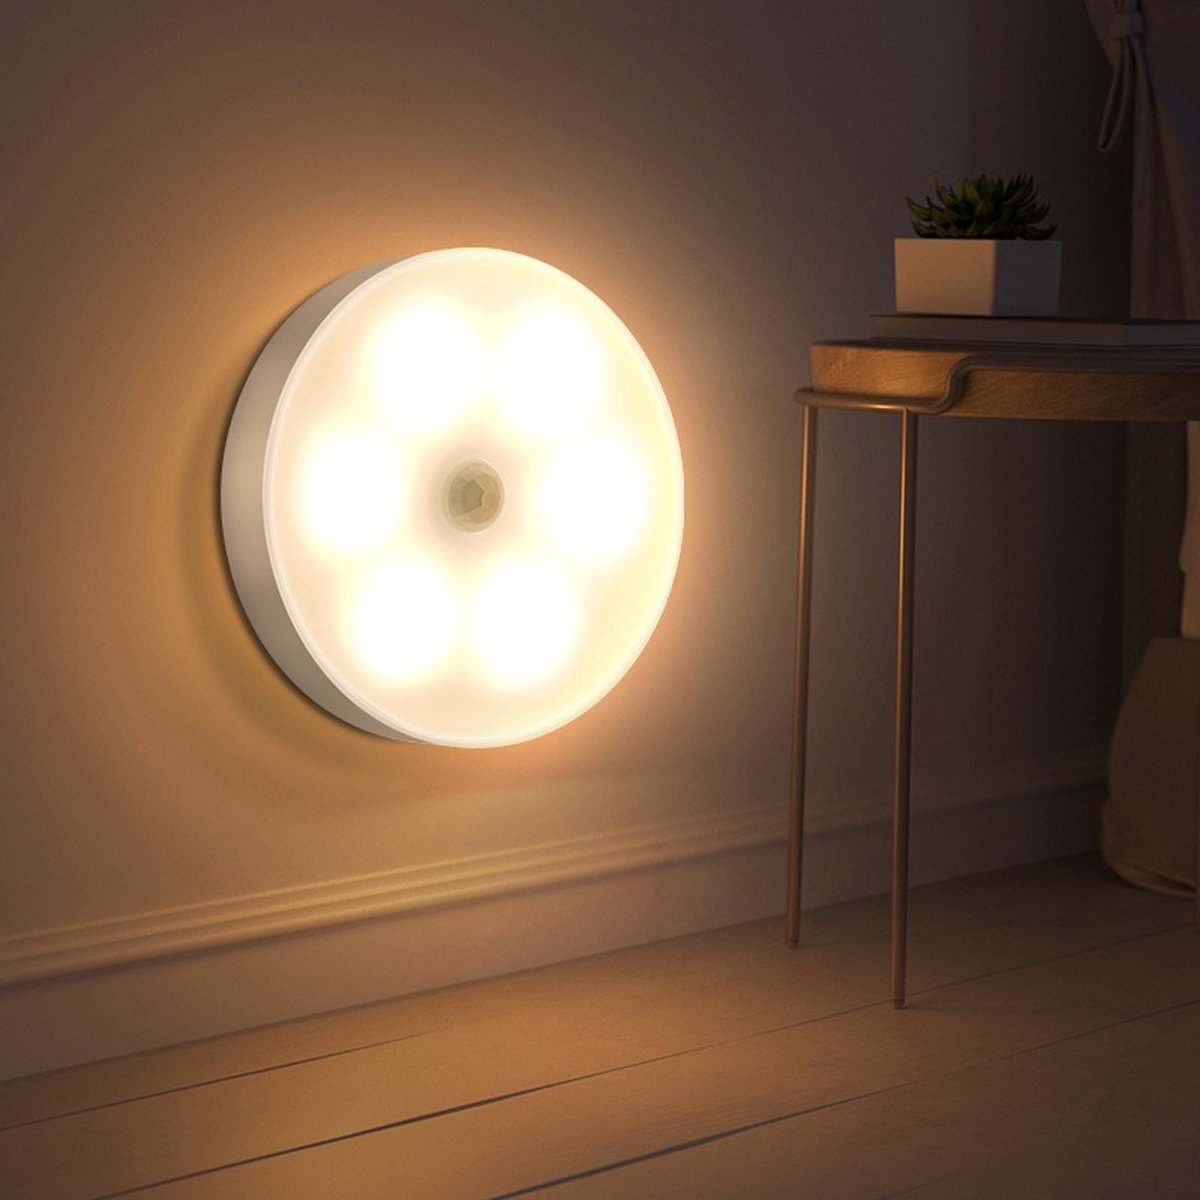 ITAGALA Intelligente Lamp met Sensor – Automatisch aan en uit – Nachtlamp – USB Oplaadbaar – Warm Wit Licht